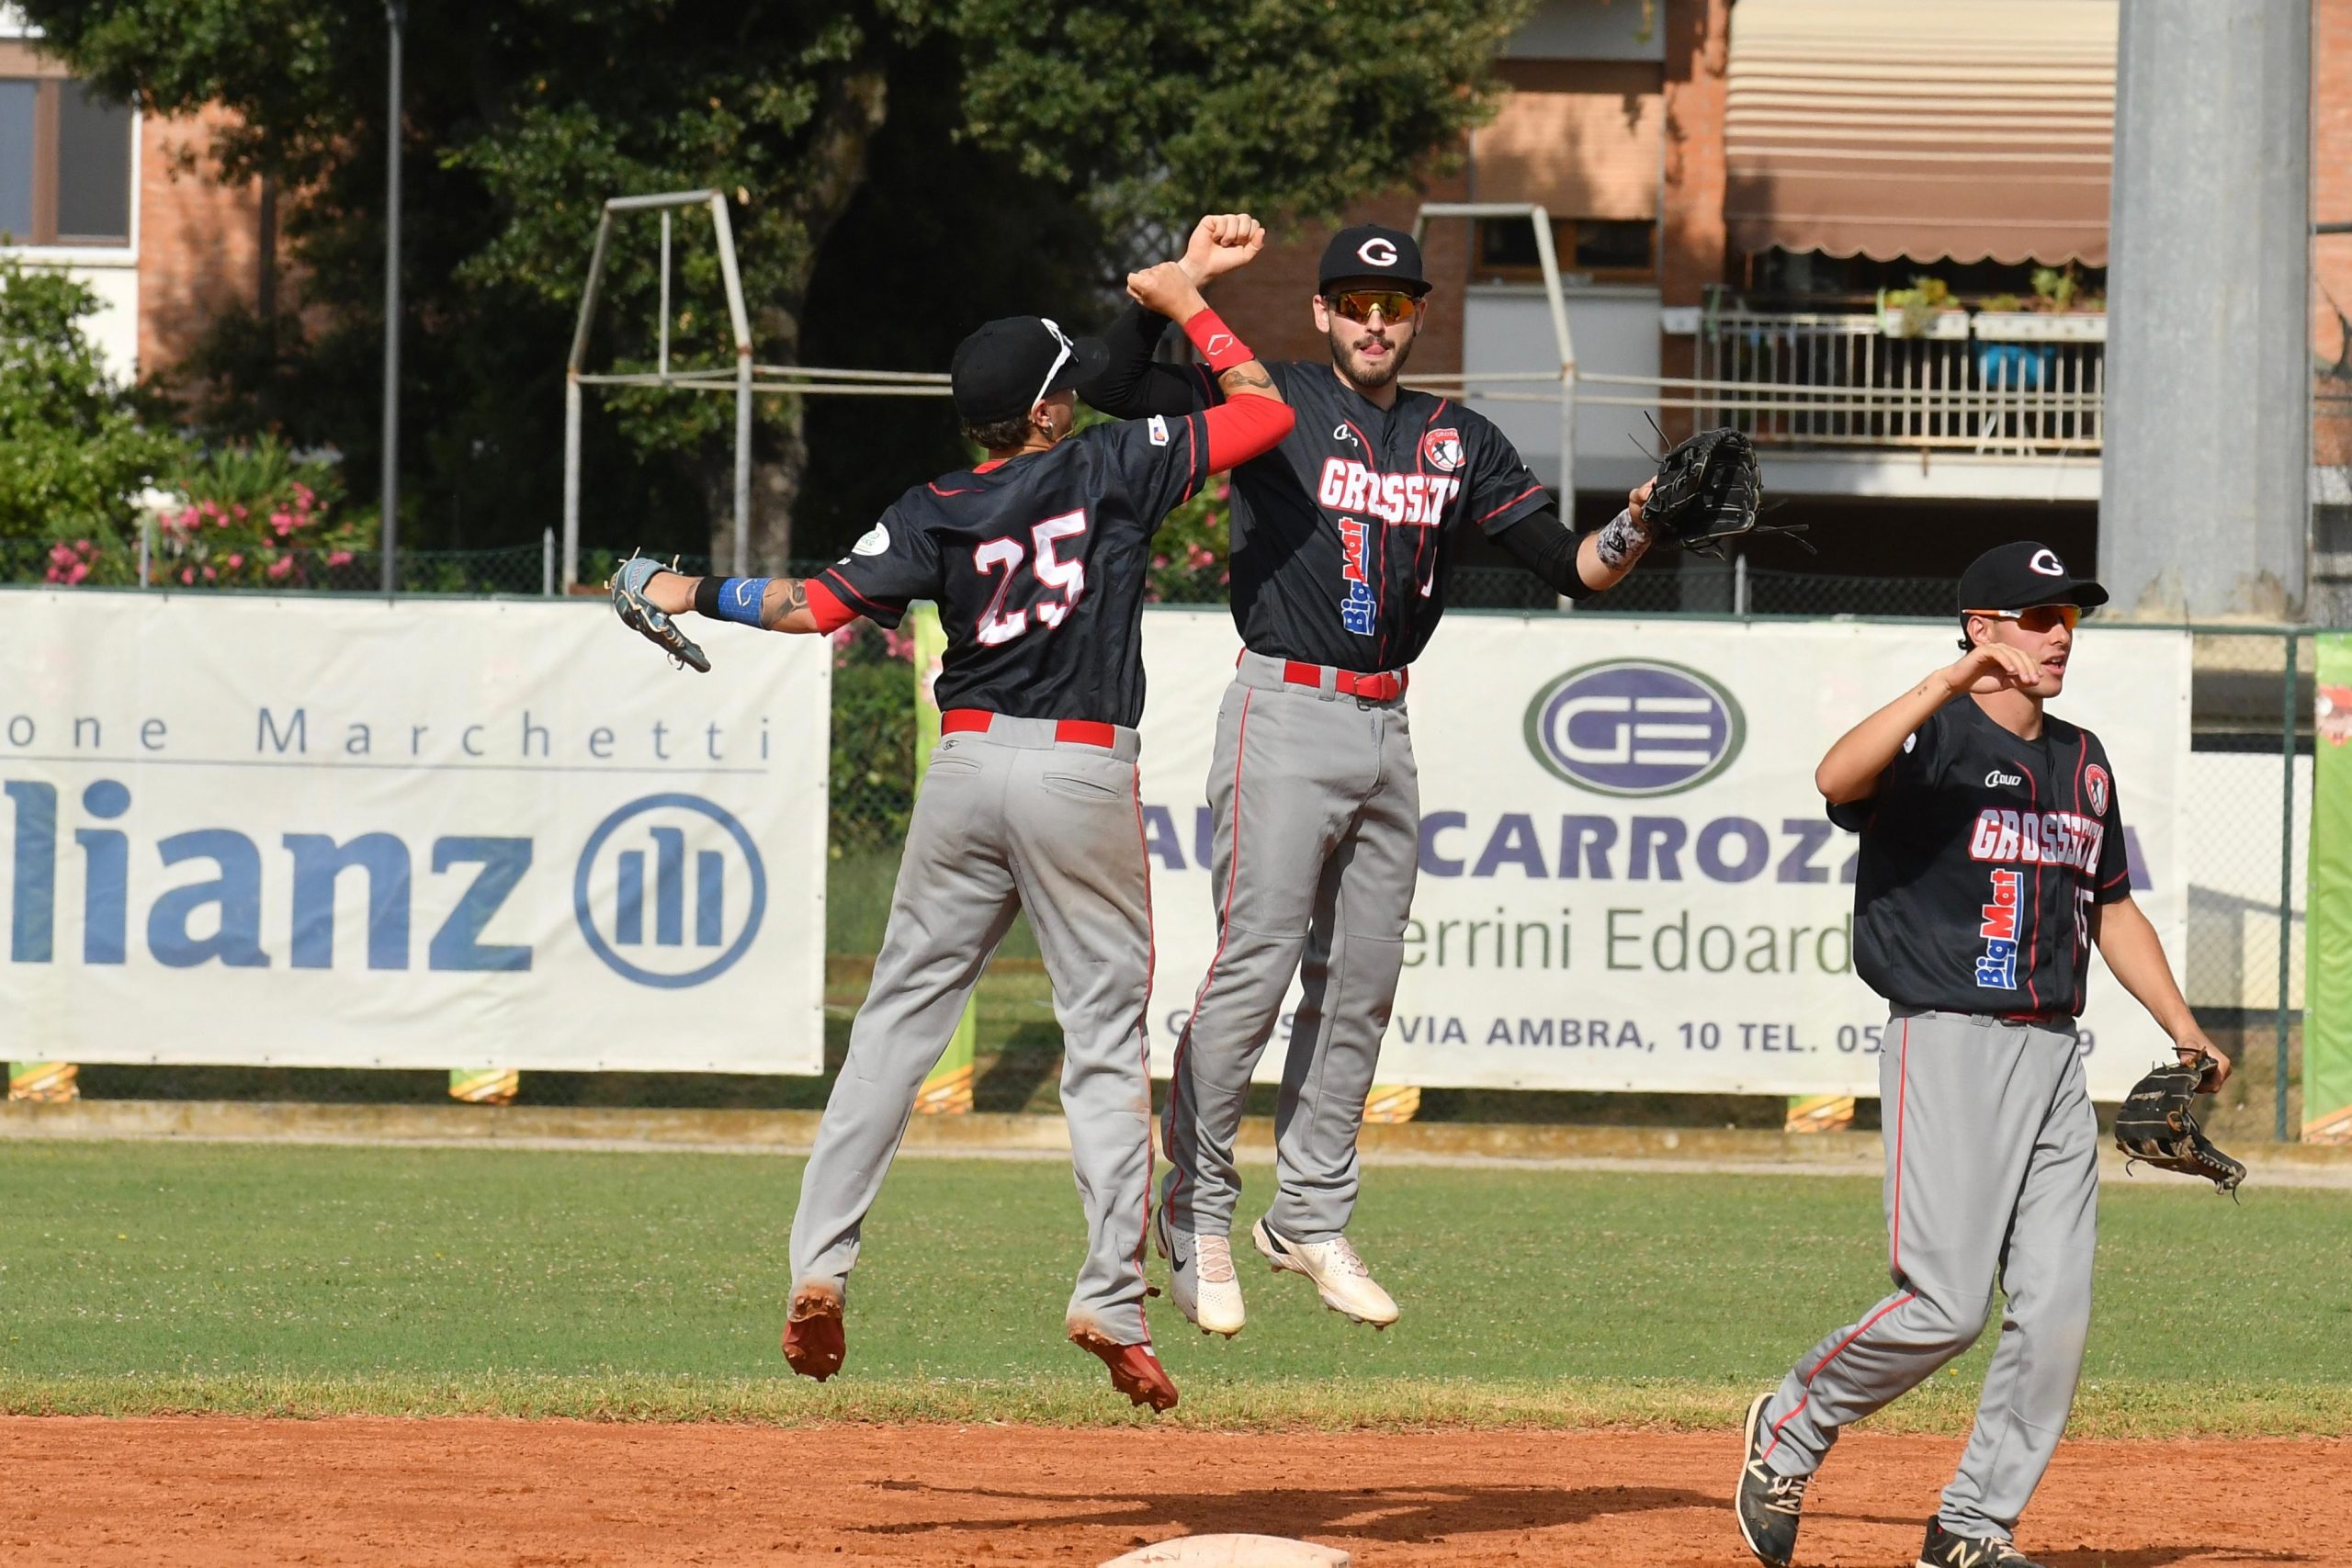 baseball-bsc-grosseto-Da-sinistra-verso-destra-Diego-Luciani-Maor-Pasquini-Sweed-e-Francesco-Cappuccini